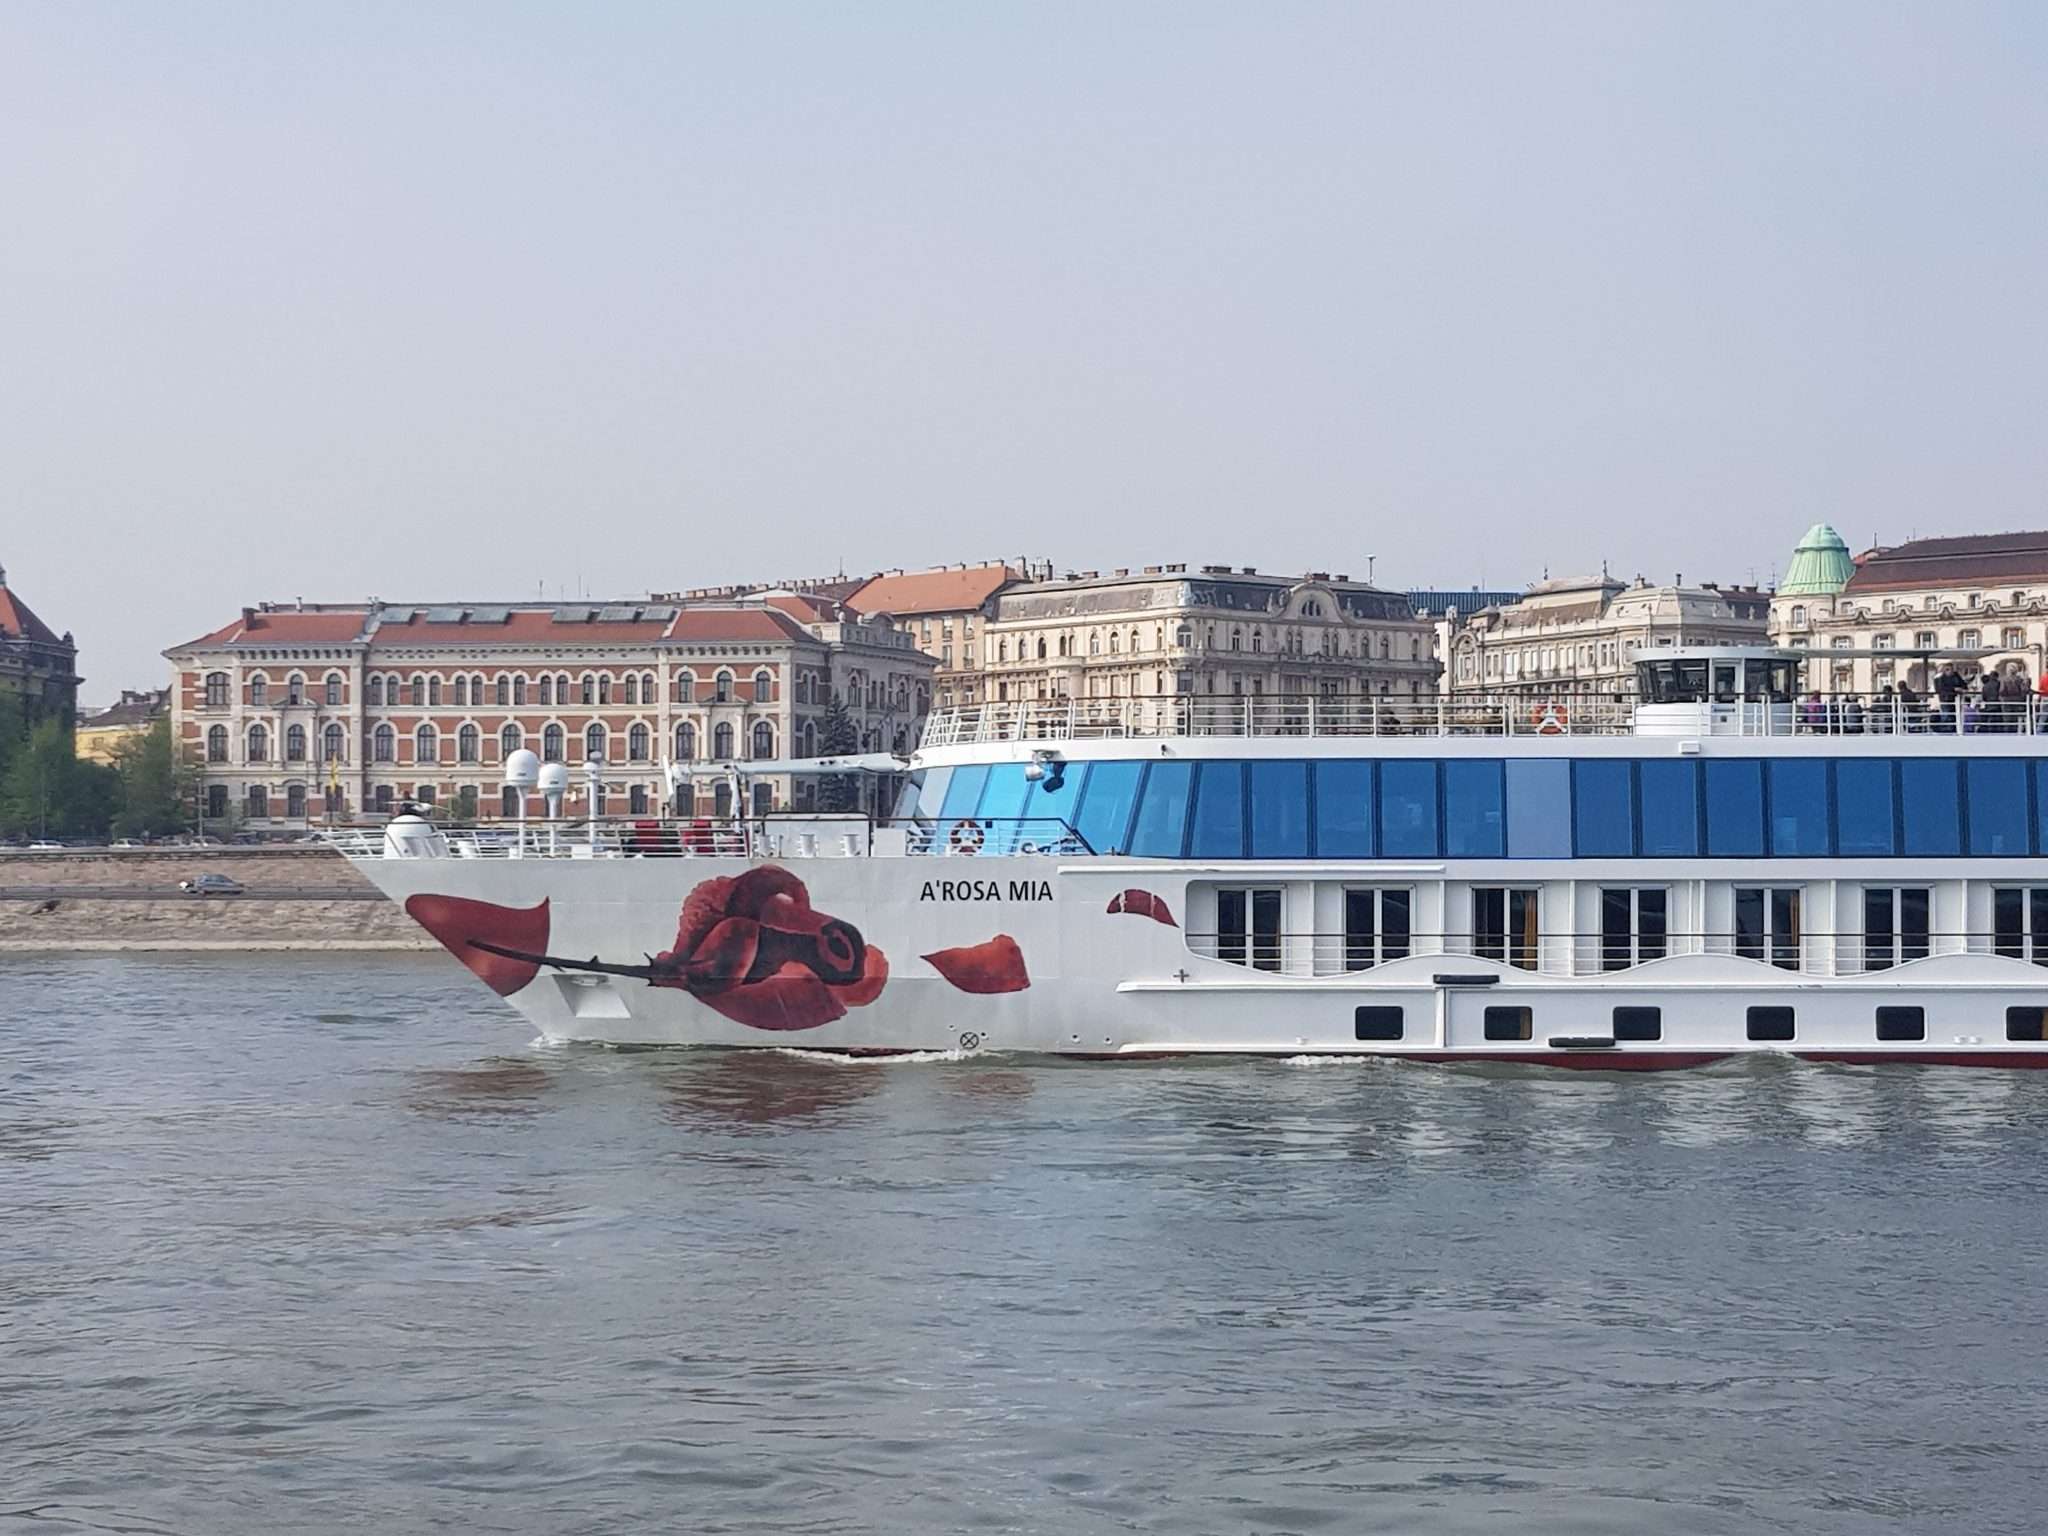 A-Rosa passt Fahrpläne an aktuelle Lage an – Donau wieder ab 23.12. 21